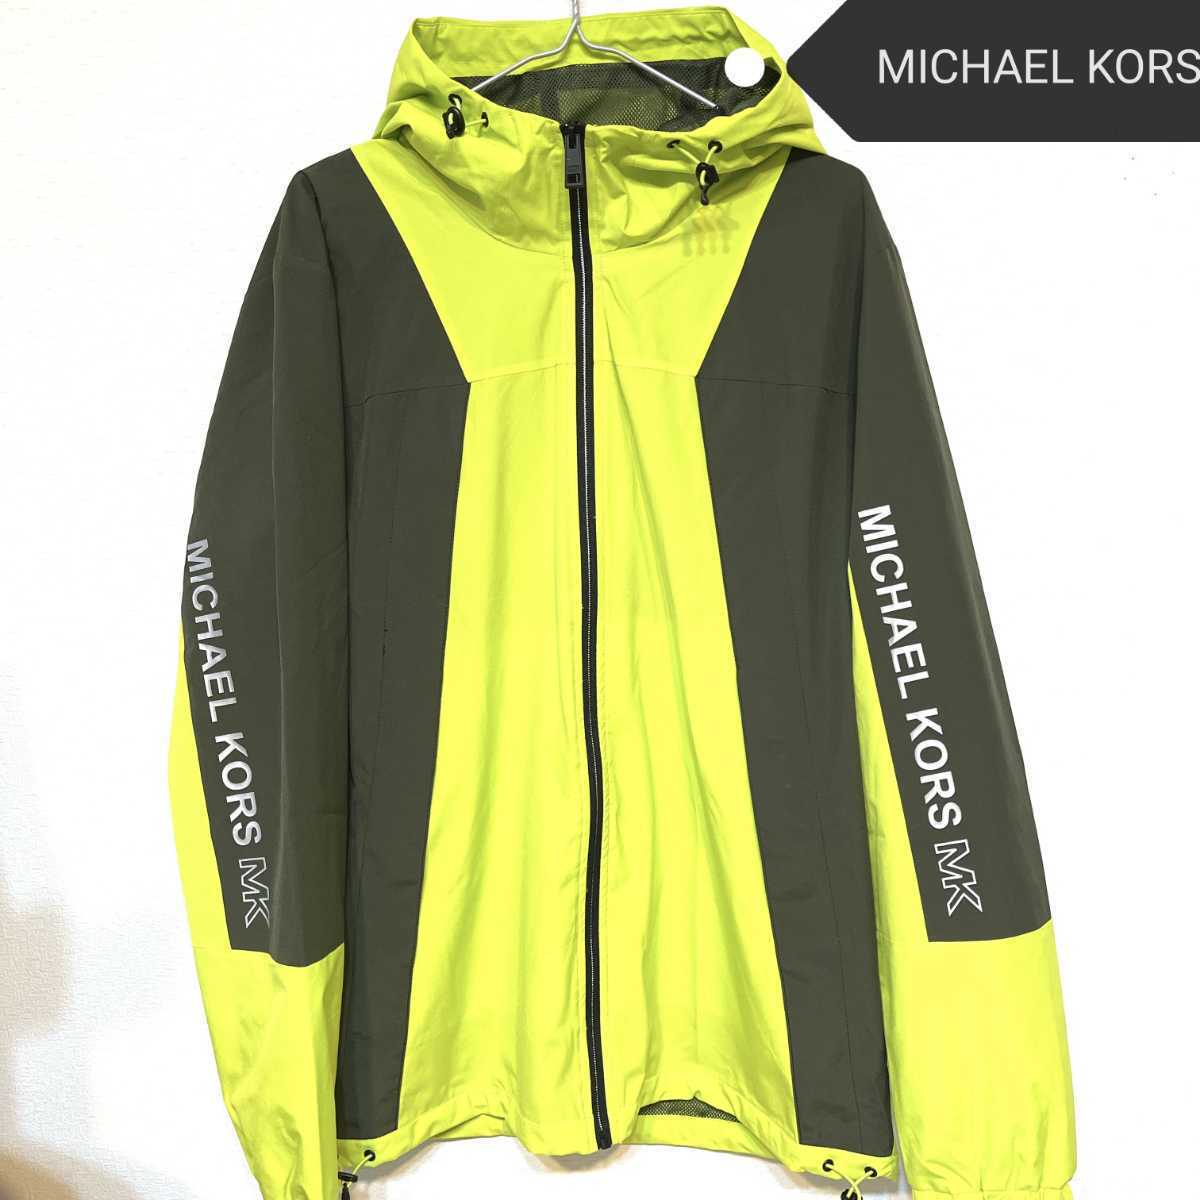 MICHAEL KORSマイケルコース MKジャケット マウンテンパーカー ナイロンジャケット アウトドア メンズ ウインドブレーカー 新品 ブランド